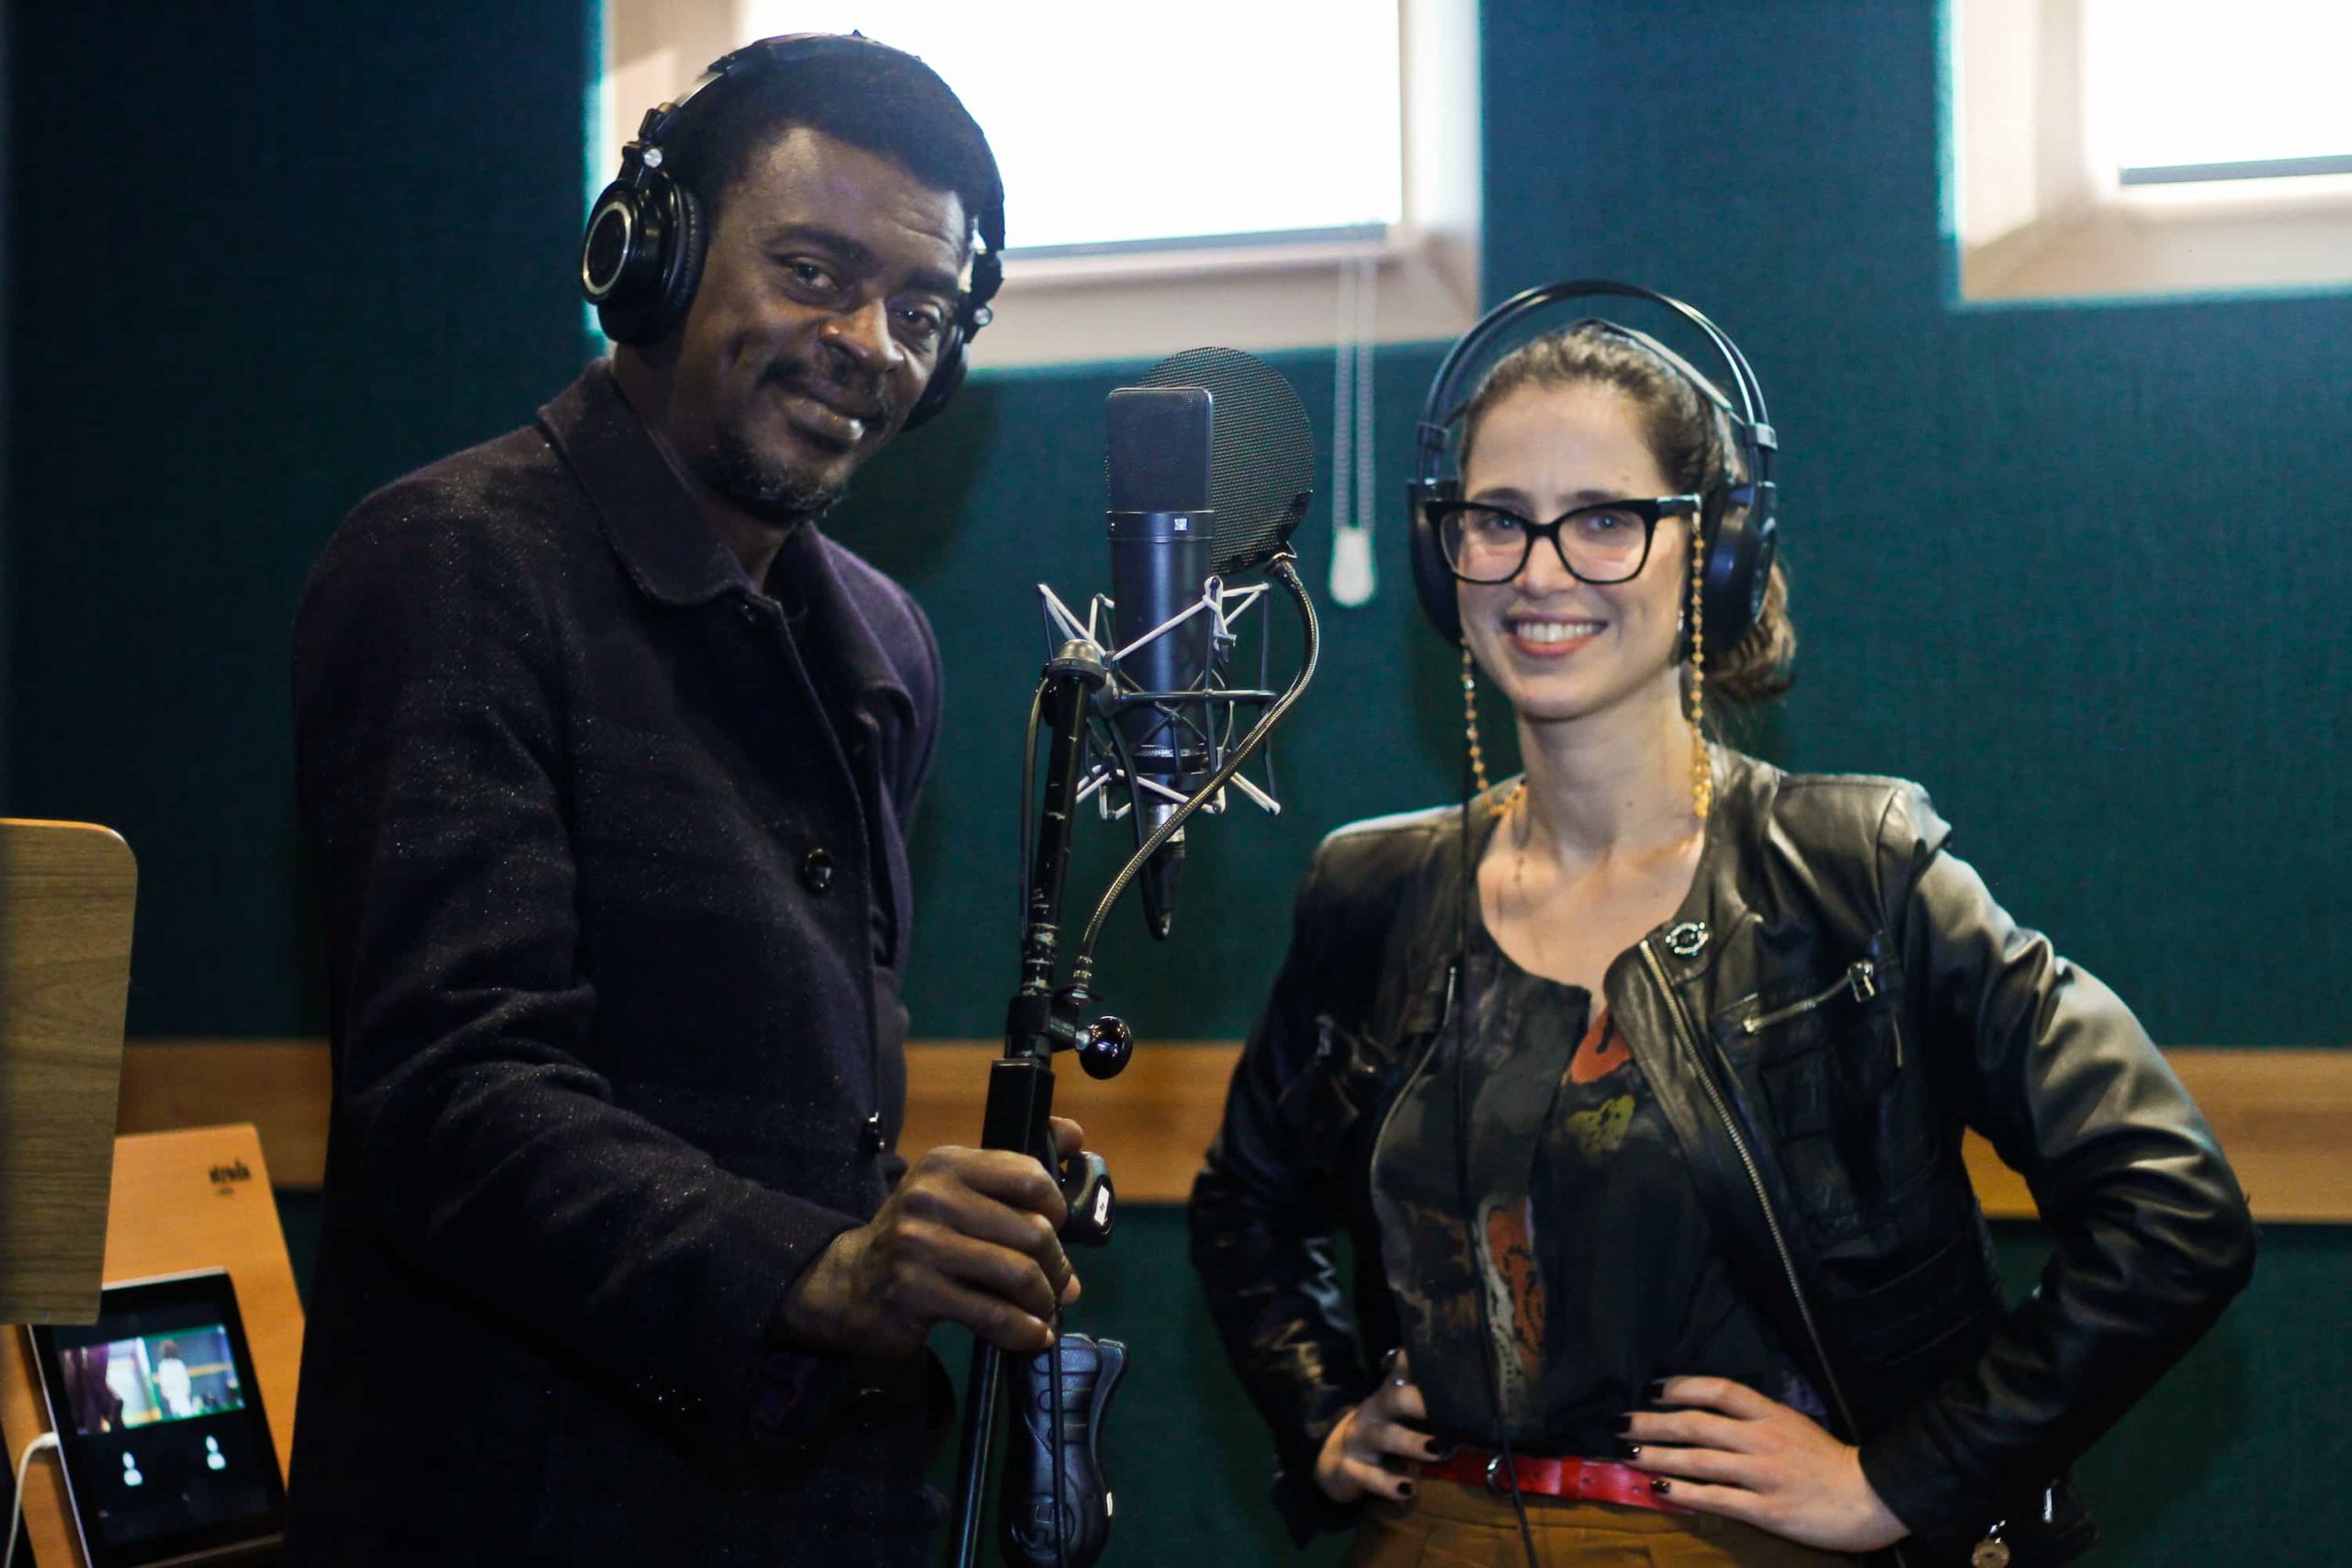 À esquerda, o ator e cantor Seu Jorge, à direita a atriz Mel Lisboa, ambos em um estúdio de gravação da audiossérie Paciente 63, Original do Spotify que volta com a Temporada 2 em fevereiro de 2022